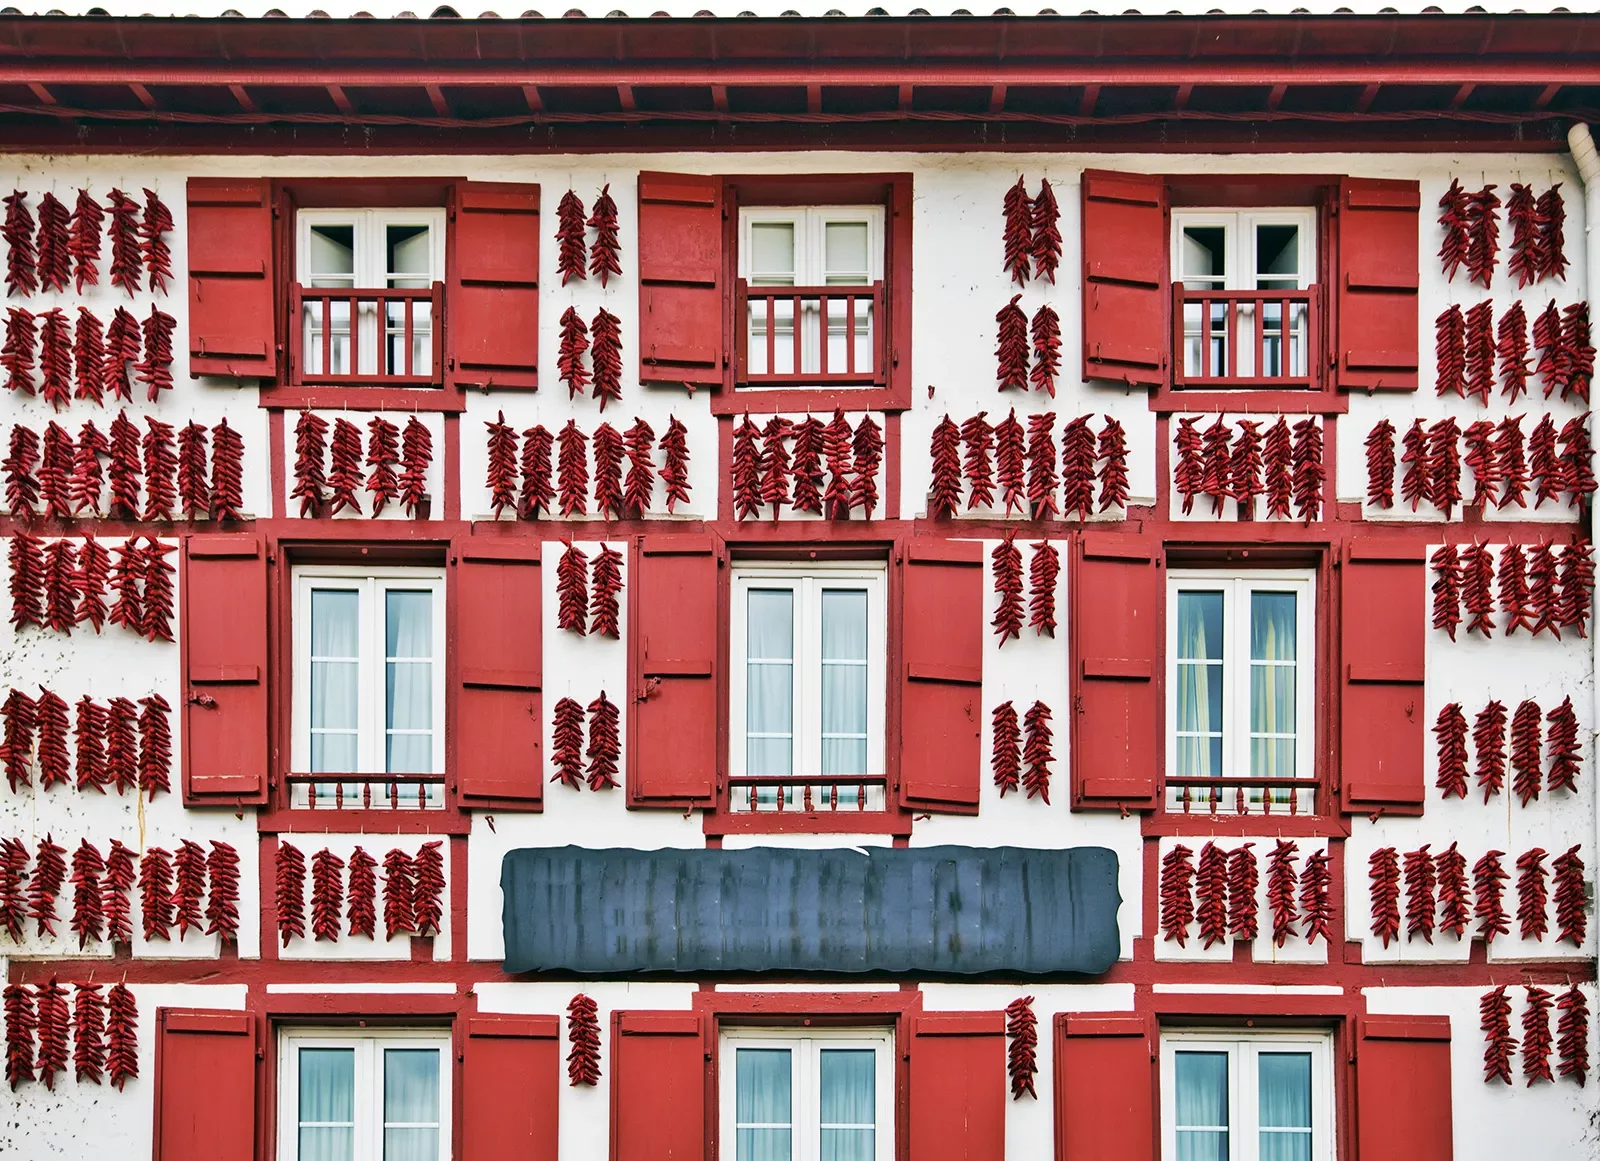 Building in Bilbao/Biarritz